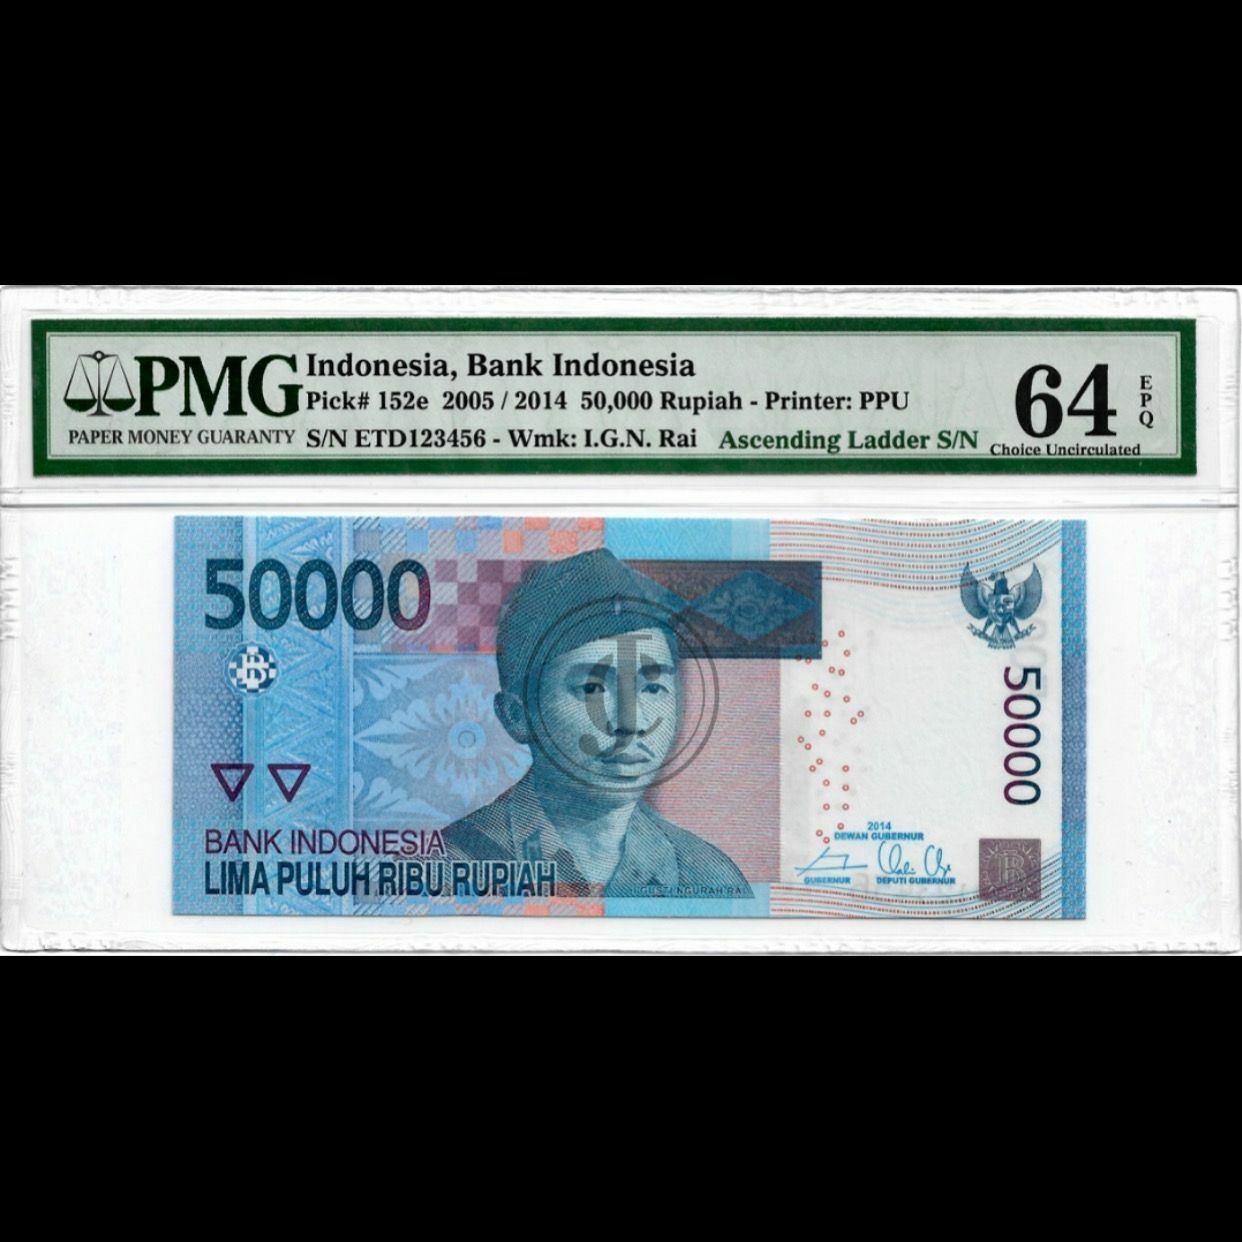 Indonesia Banknote 50000 Rupiah 2005/2014 P152e Ascending Ladder 123456 PMG 64 E